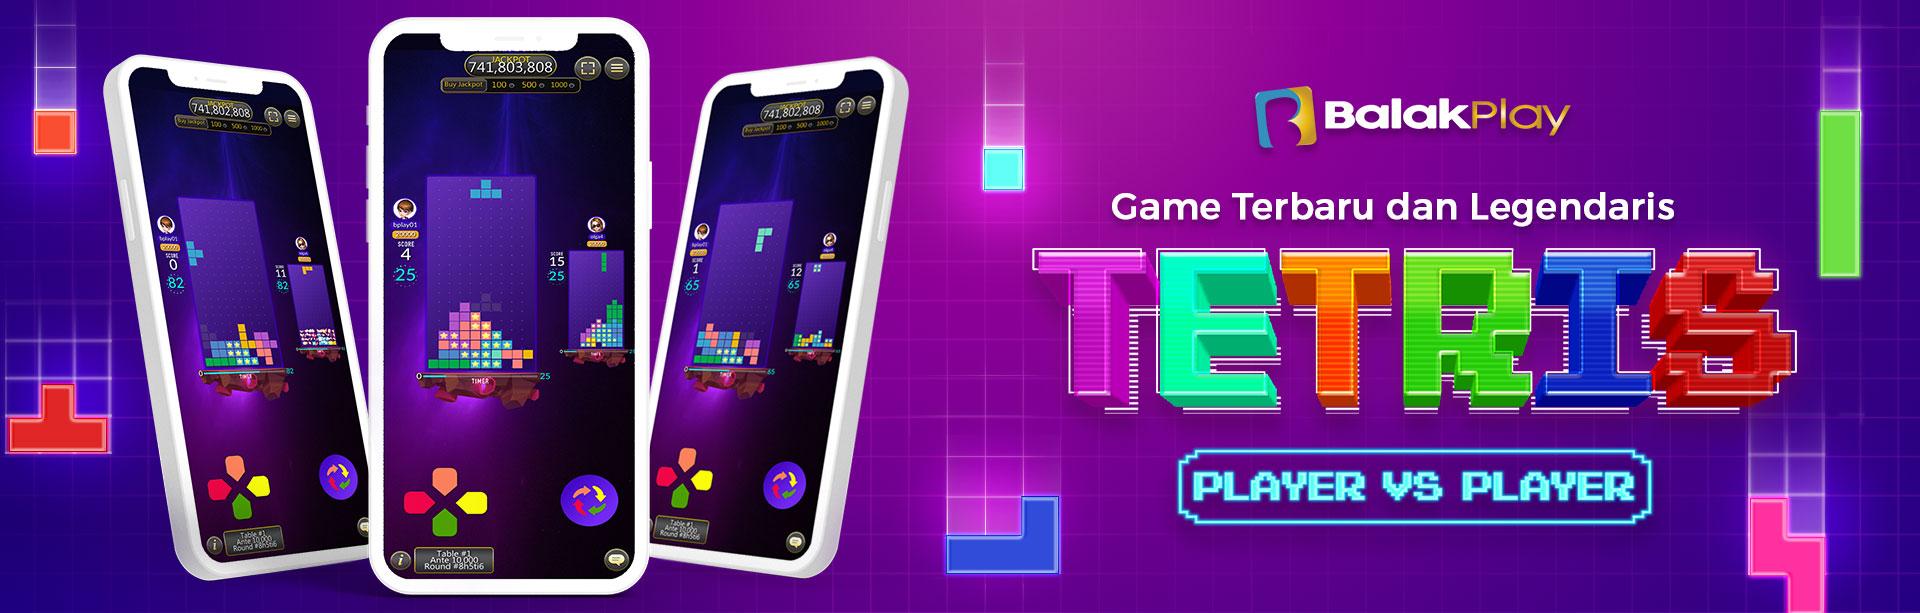 Balakplay Tetris